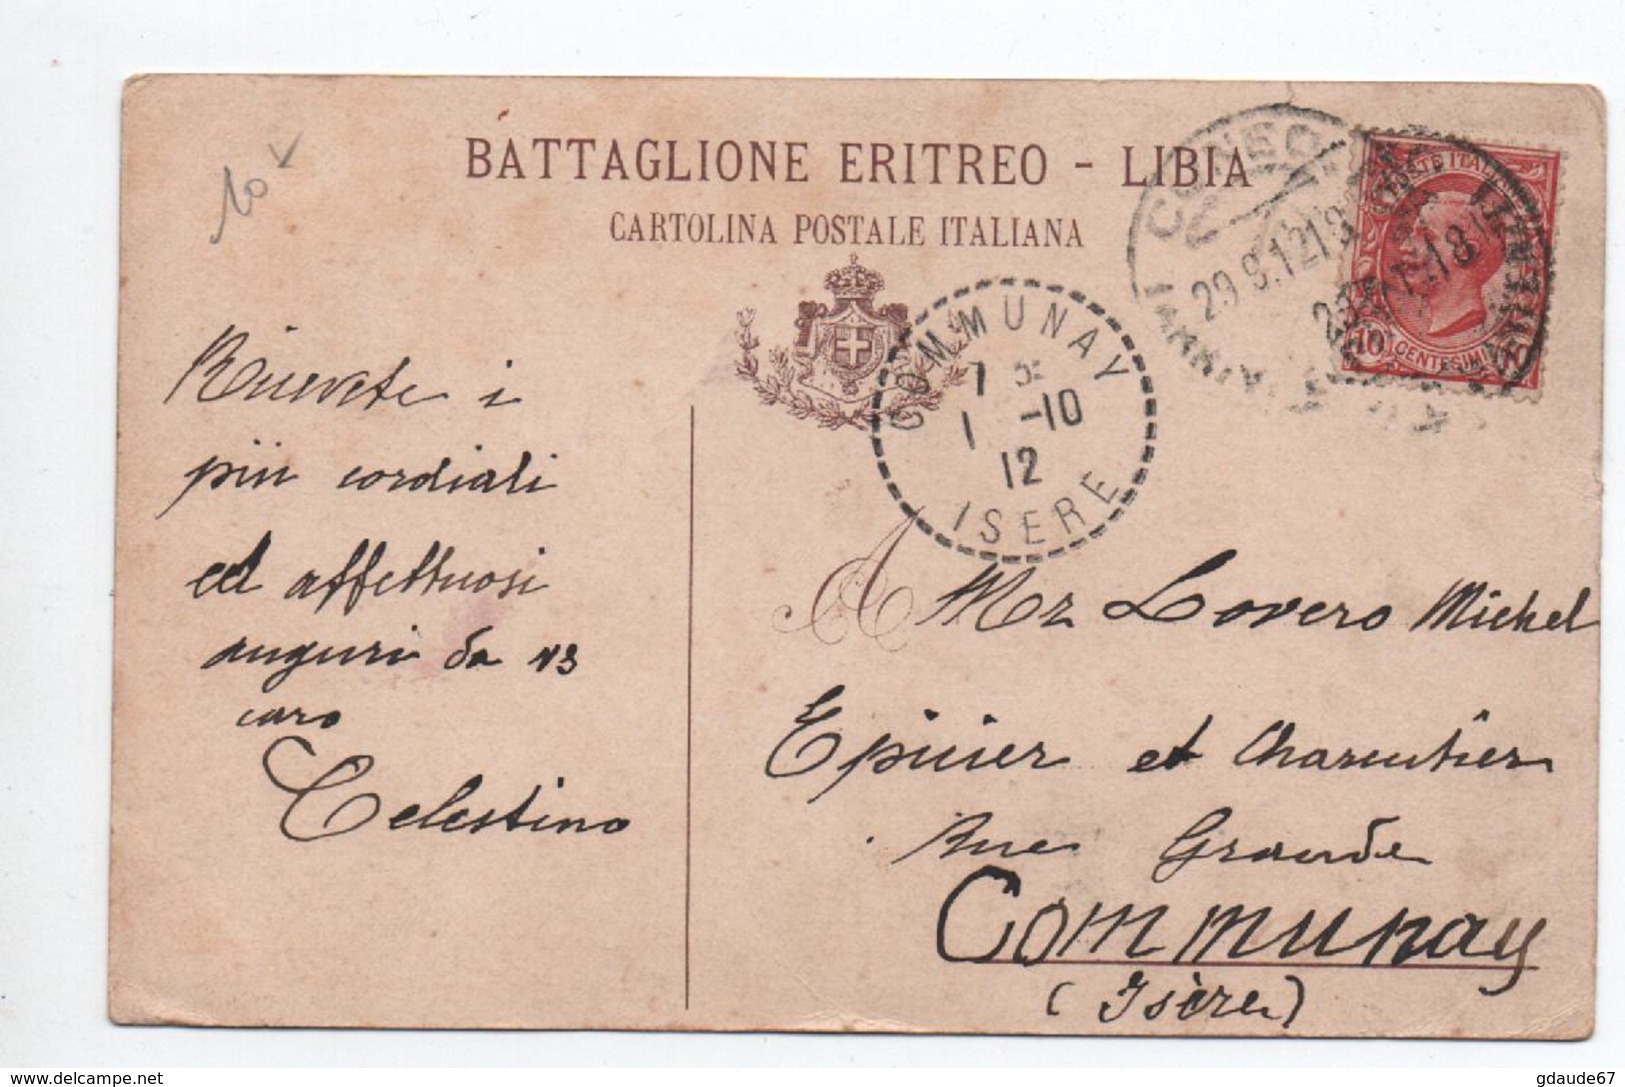 BATTAGLIONE ERITREO LIBIA - CARTE PATRIOTIQUE MILITAIRE ITALIE - ANCH'IO PER LA TUA BANDIERA - ILLUSTRATEUR - Patrióticos